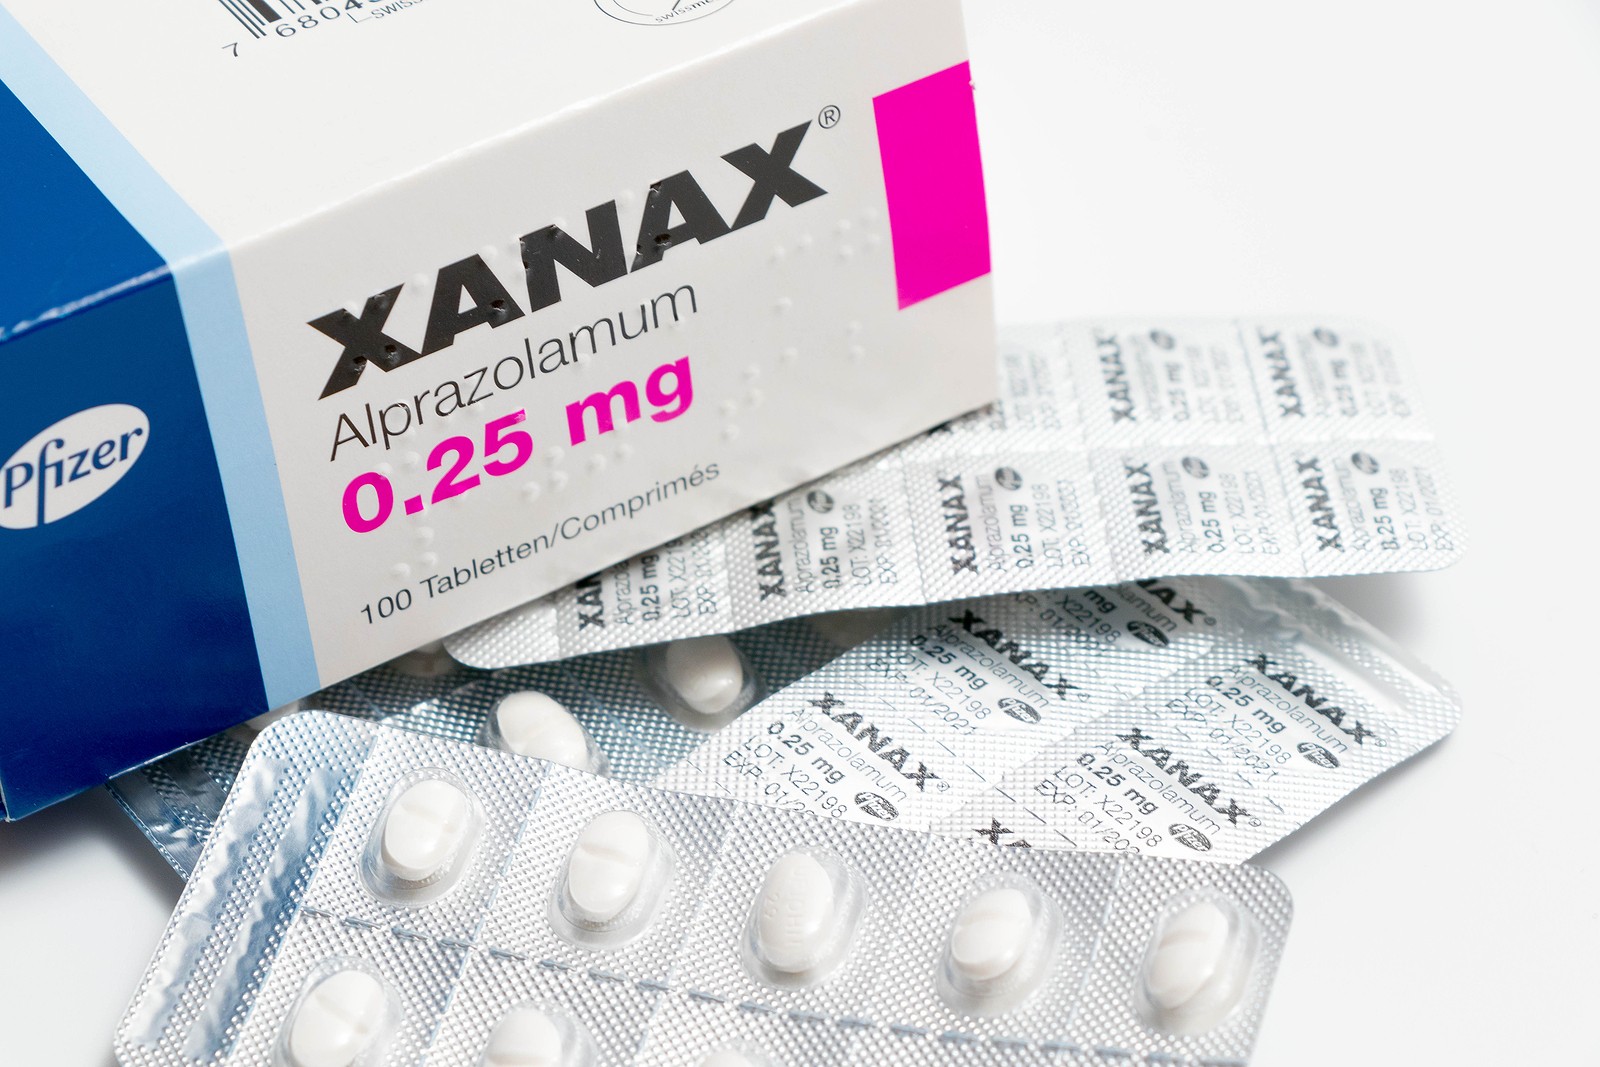 xnanax pills